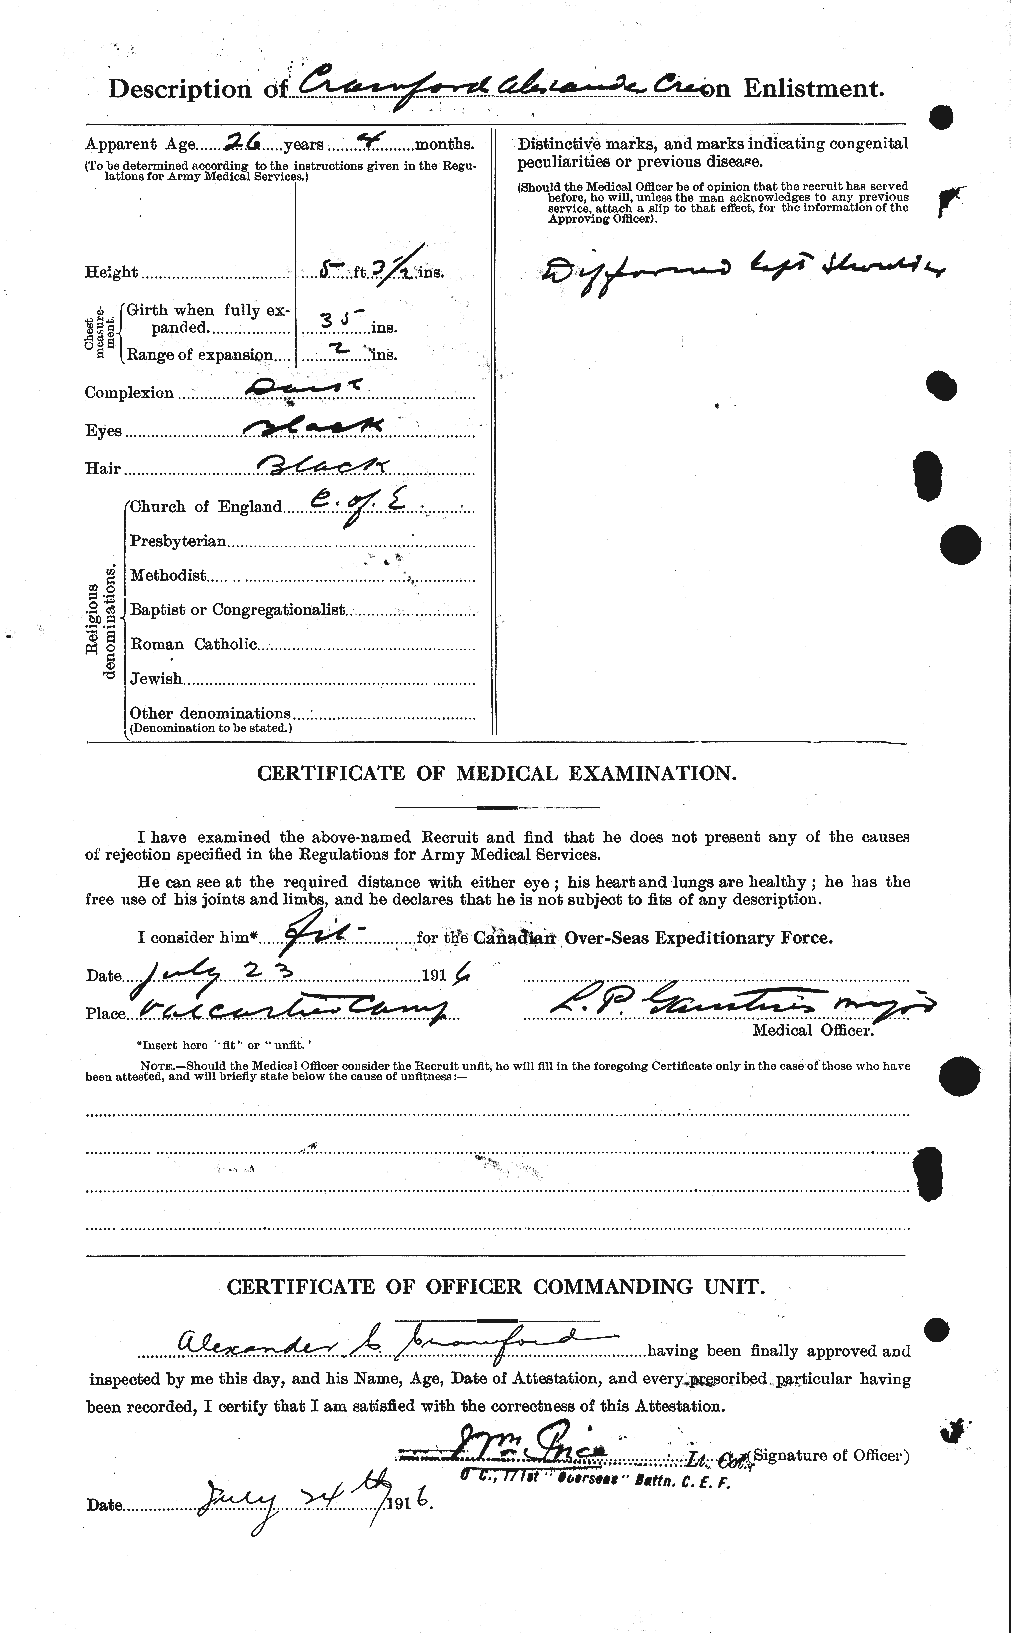 Dossiers du Personnel de la Première Guerre mondiale - CEC 060959b